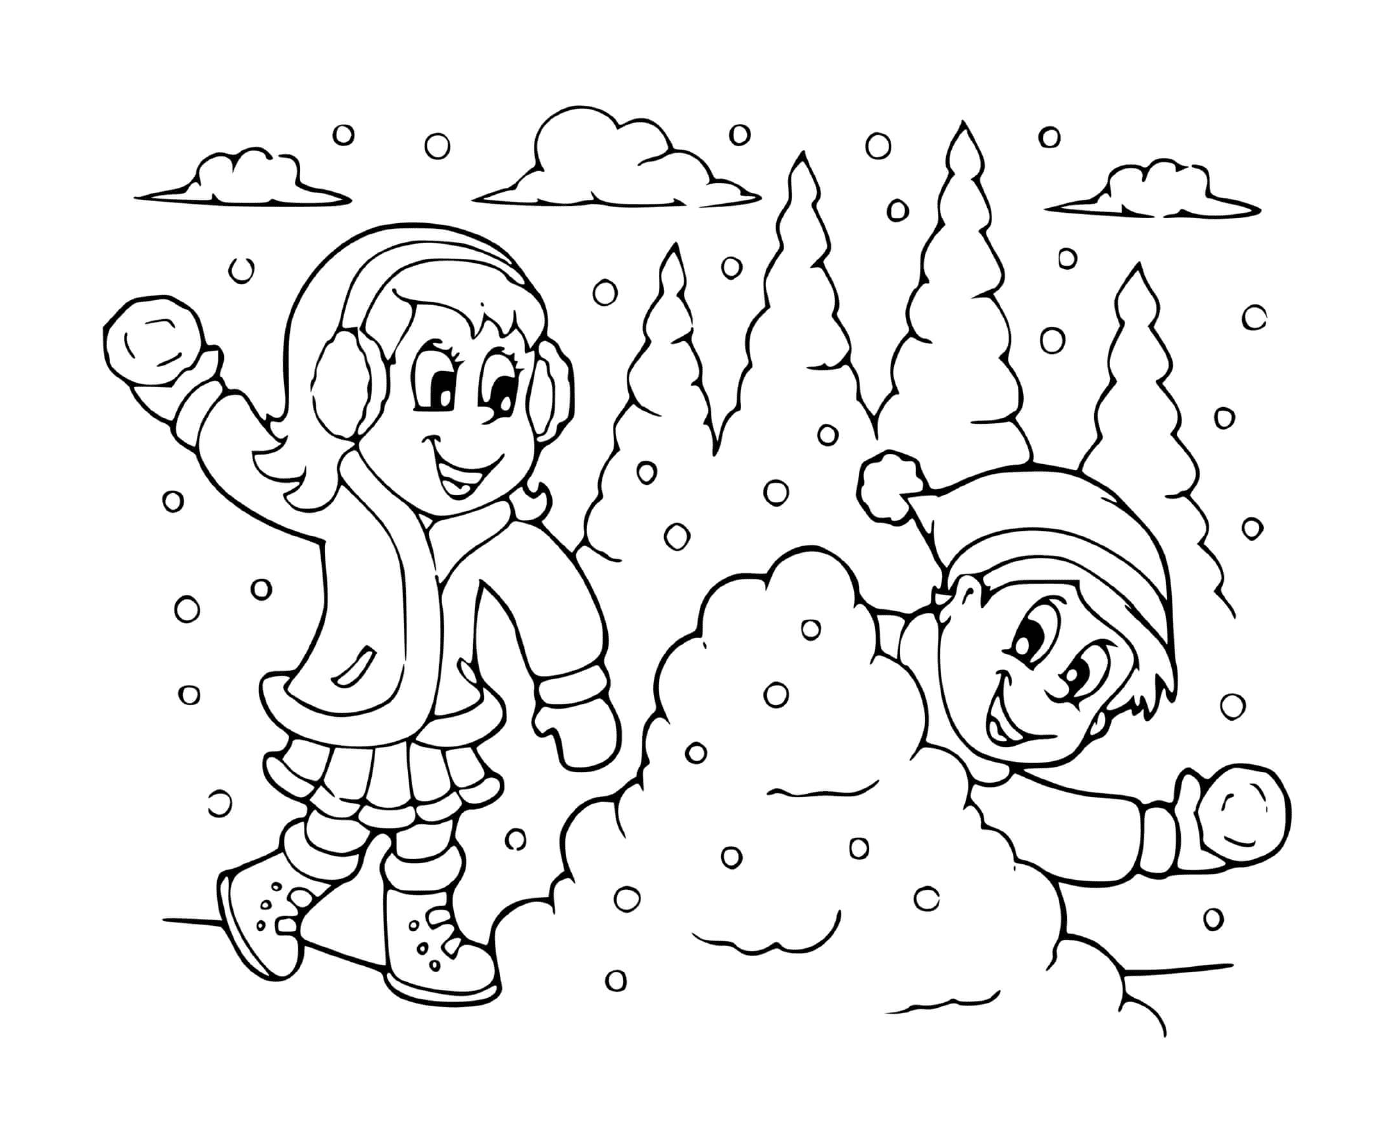   Bataille de neige entre fille et garçon 